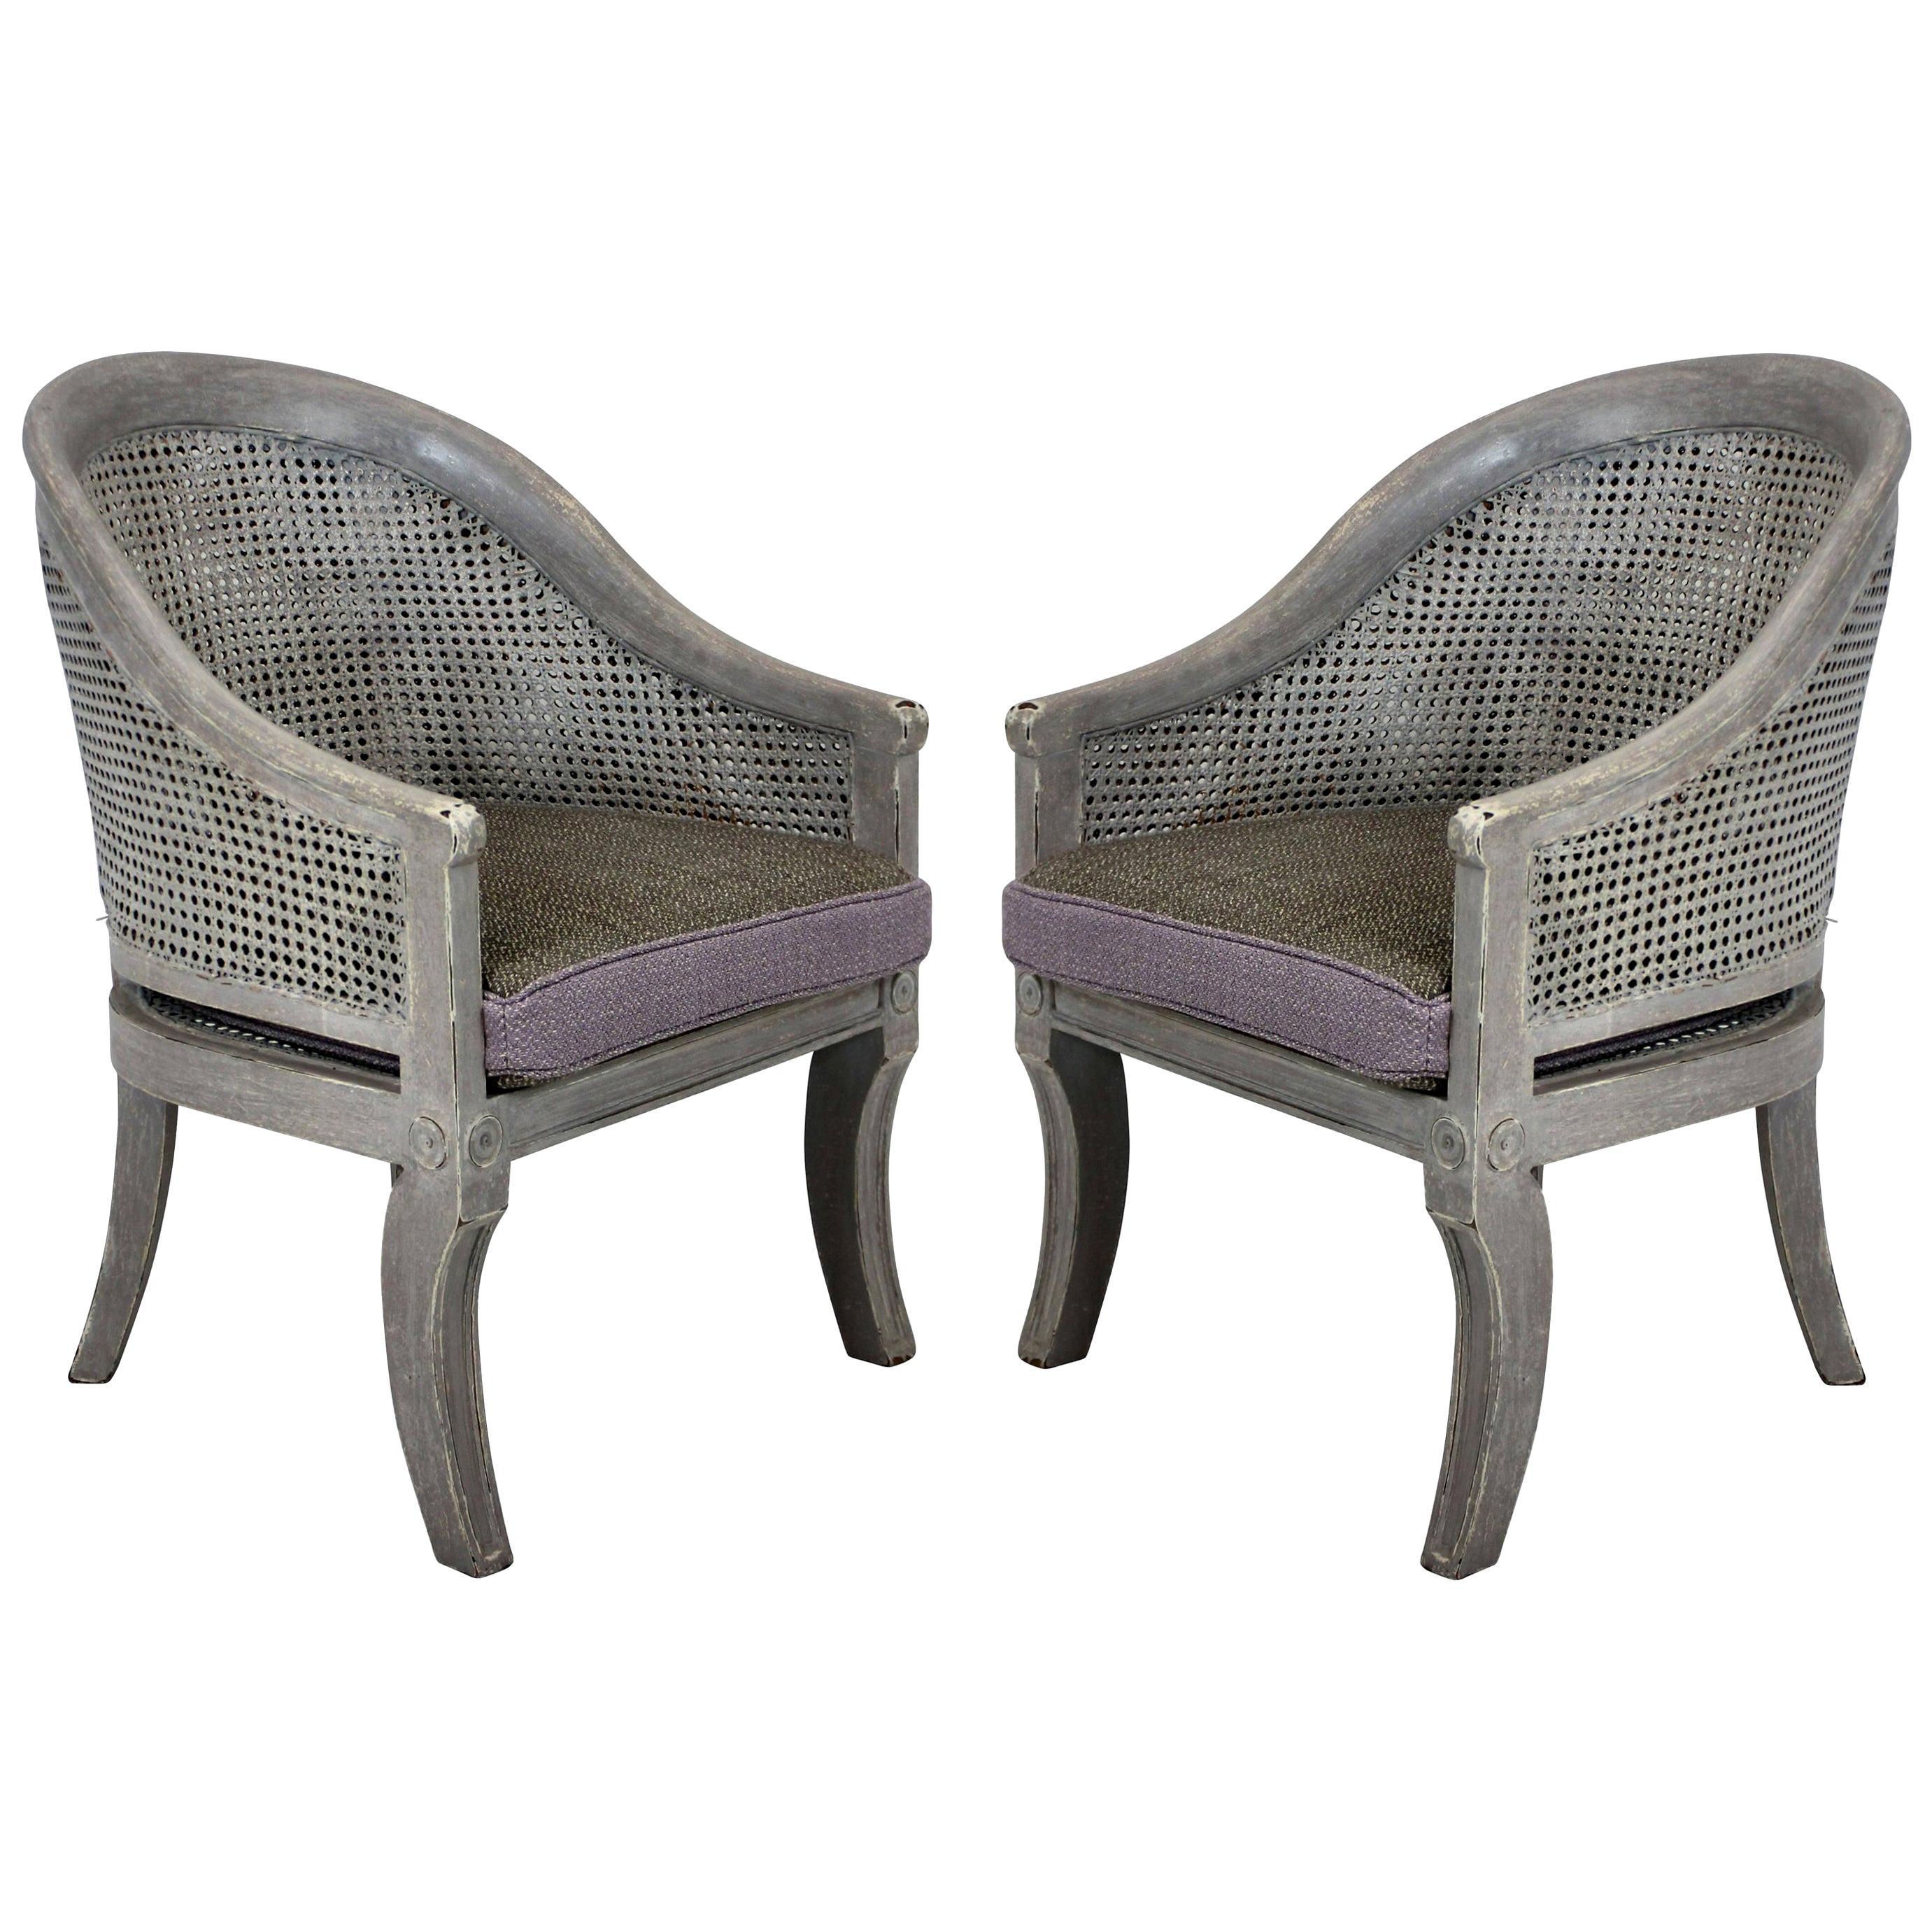 Pair of Painted Regency Spoon Back Chairs